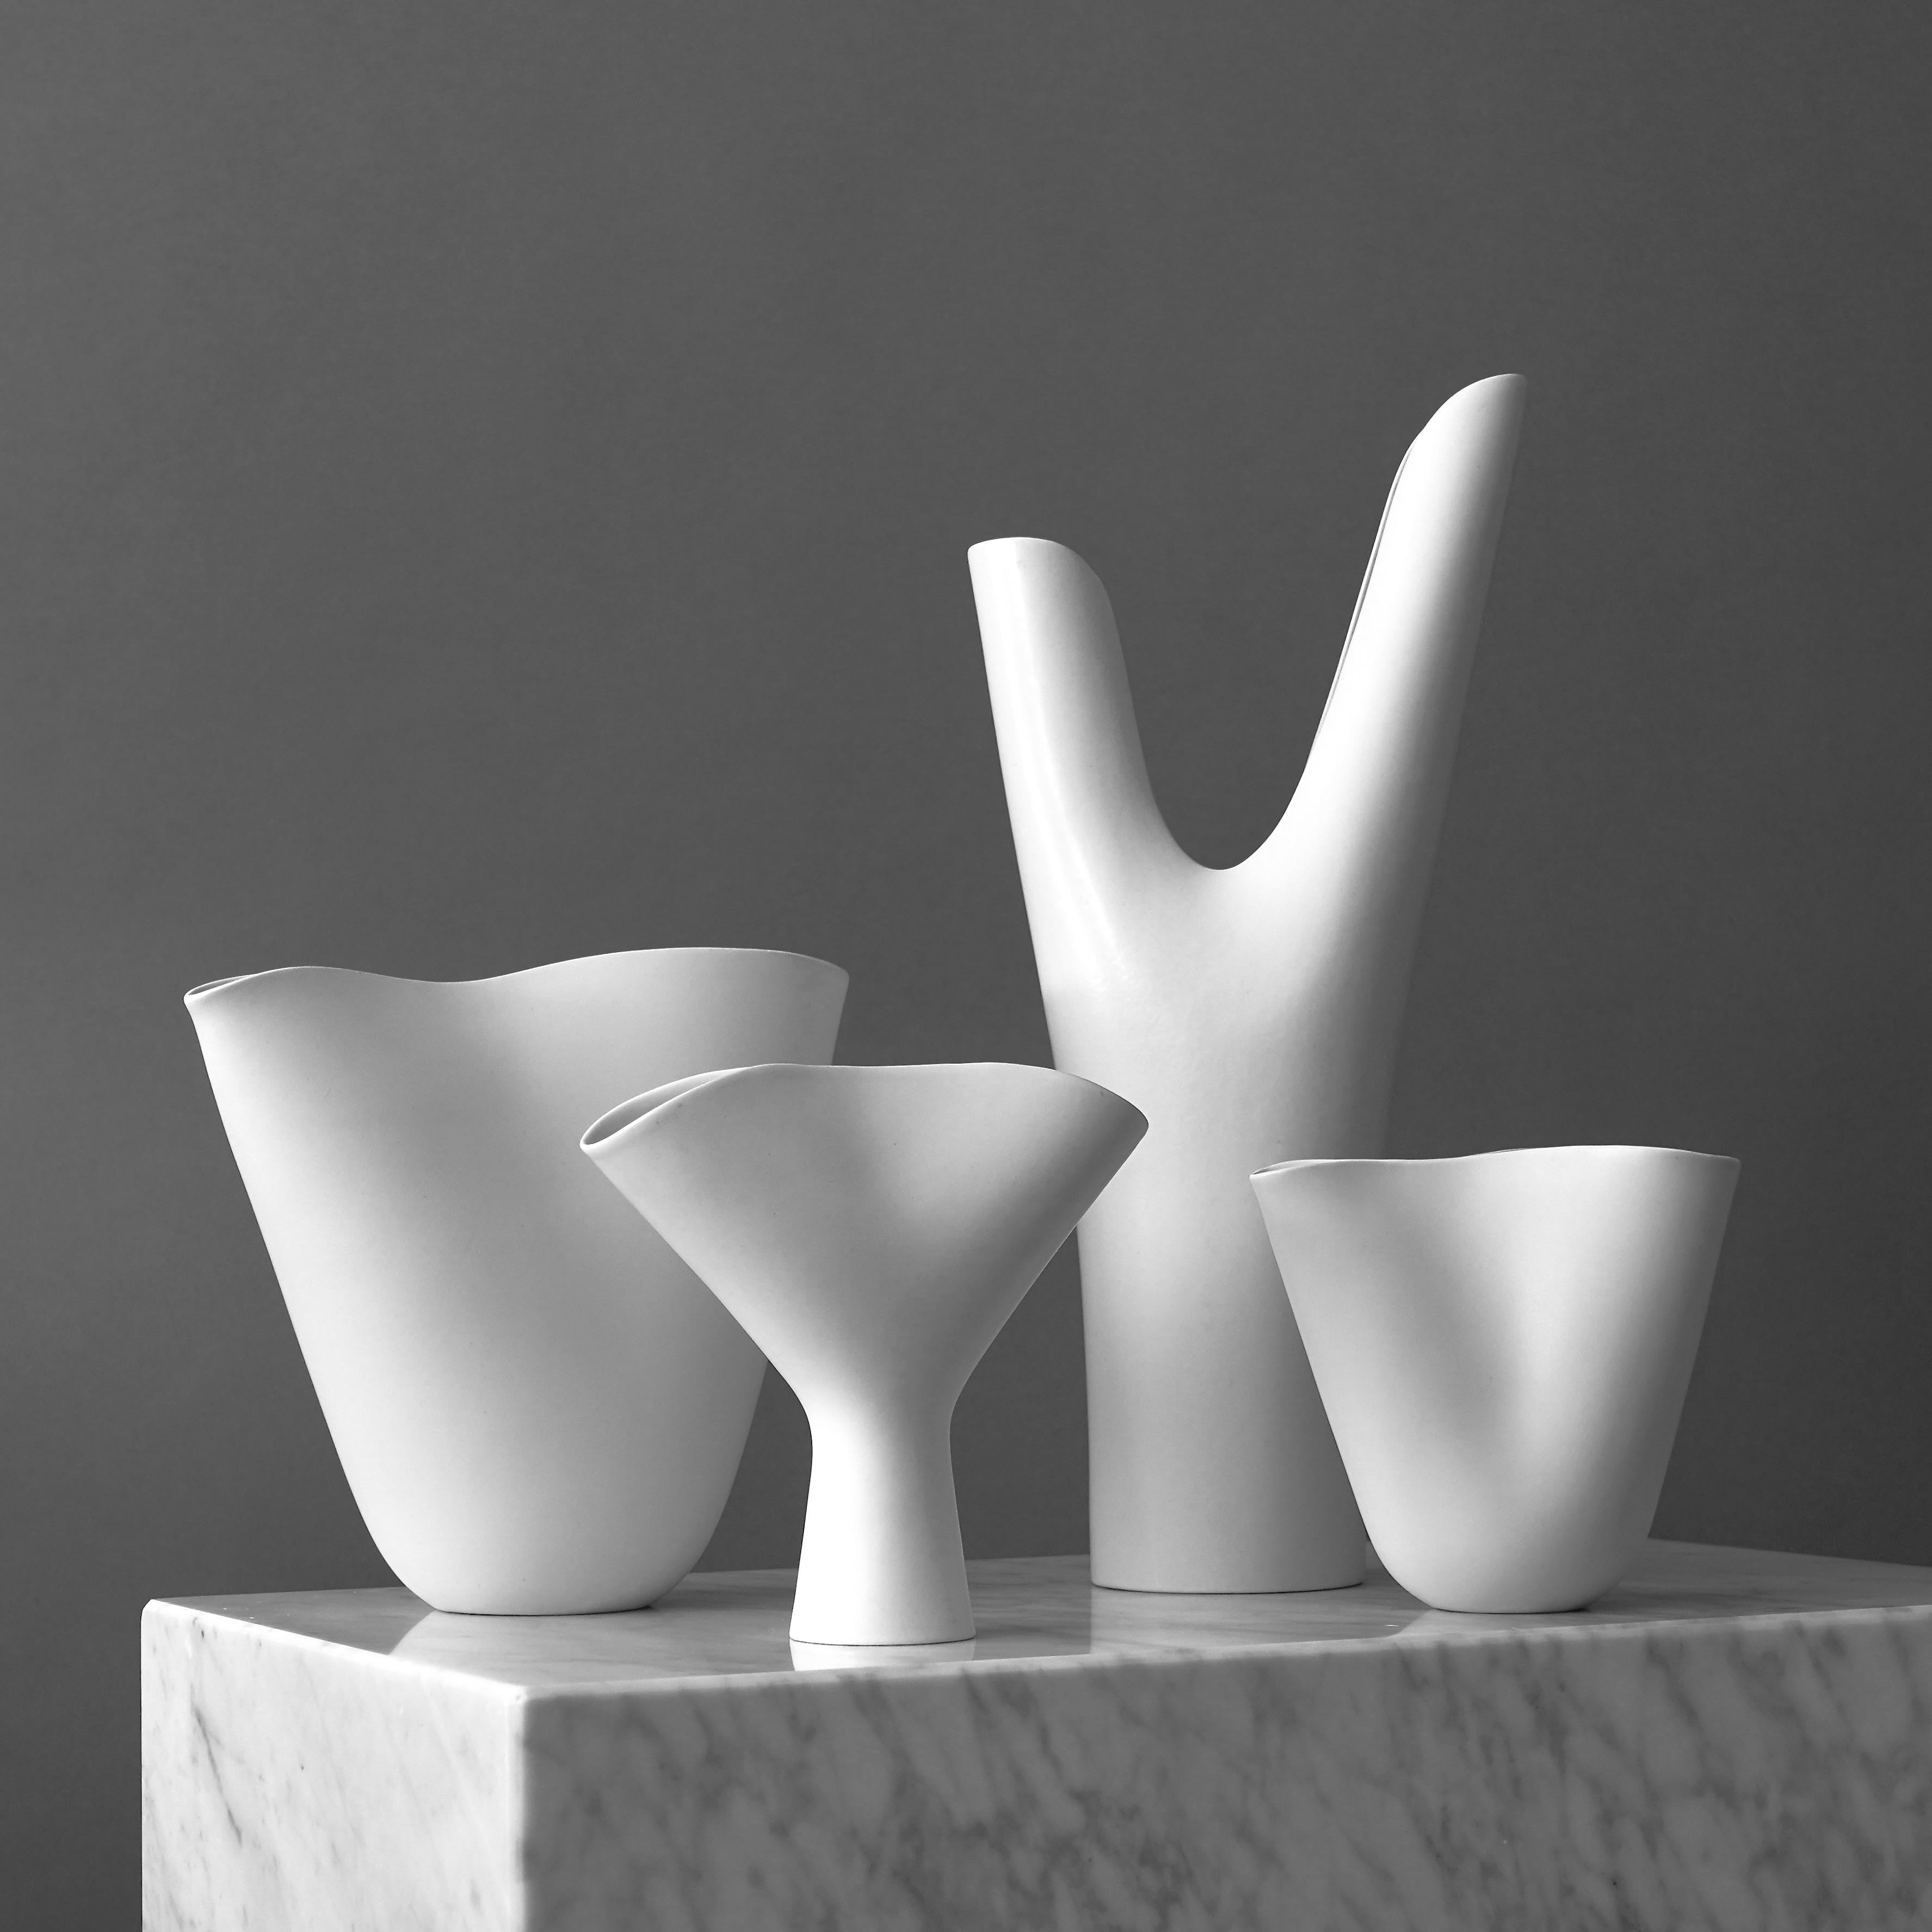 Satz von 4 Vasen „Veckla“ von Stig Lindberg für Gustavsberg Studio, Schweden, 1950er Jahre (Skandinavische Moderne)